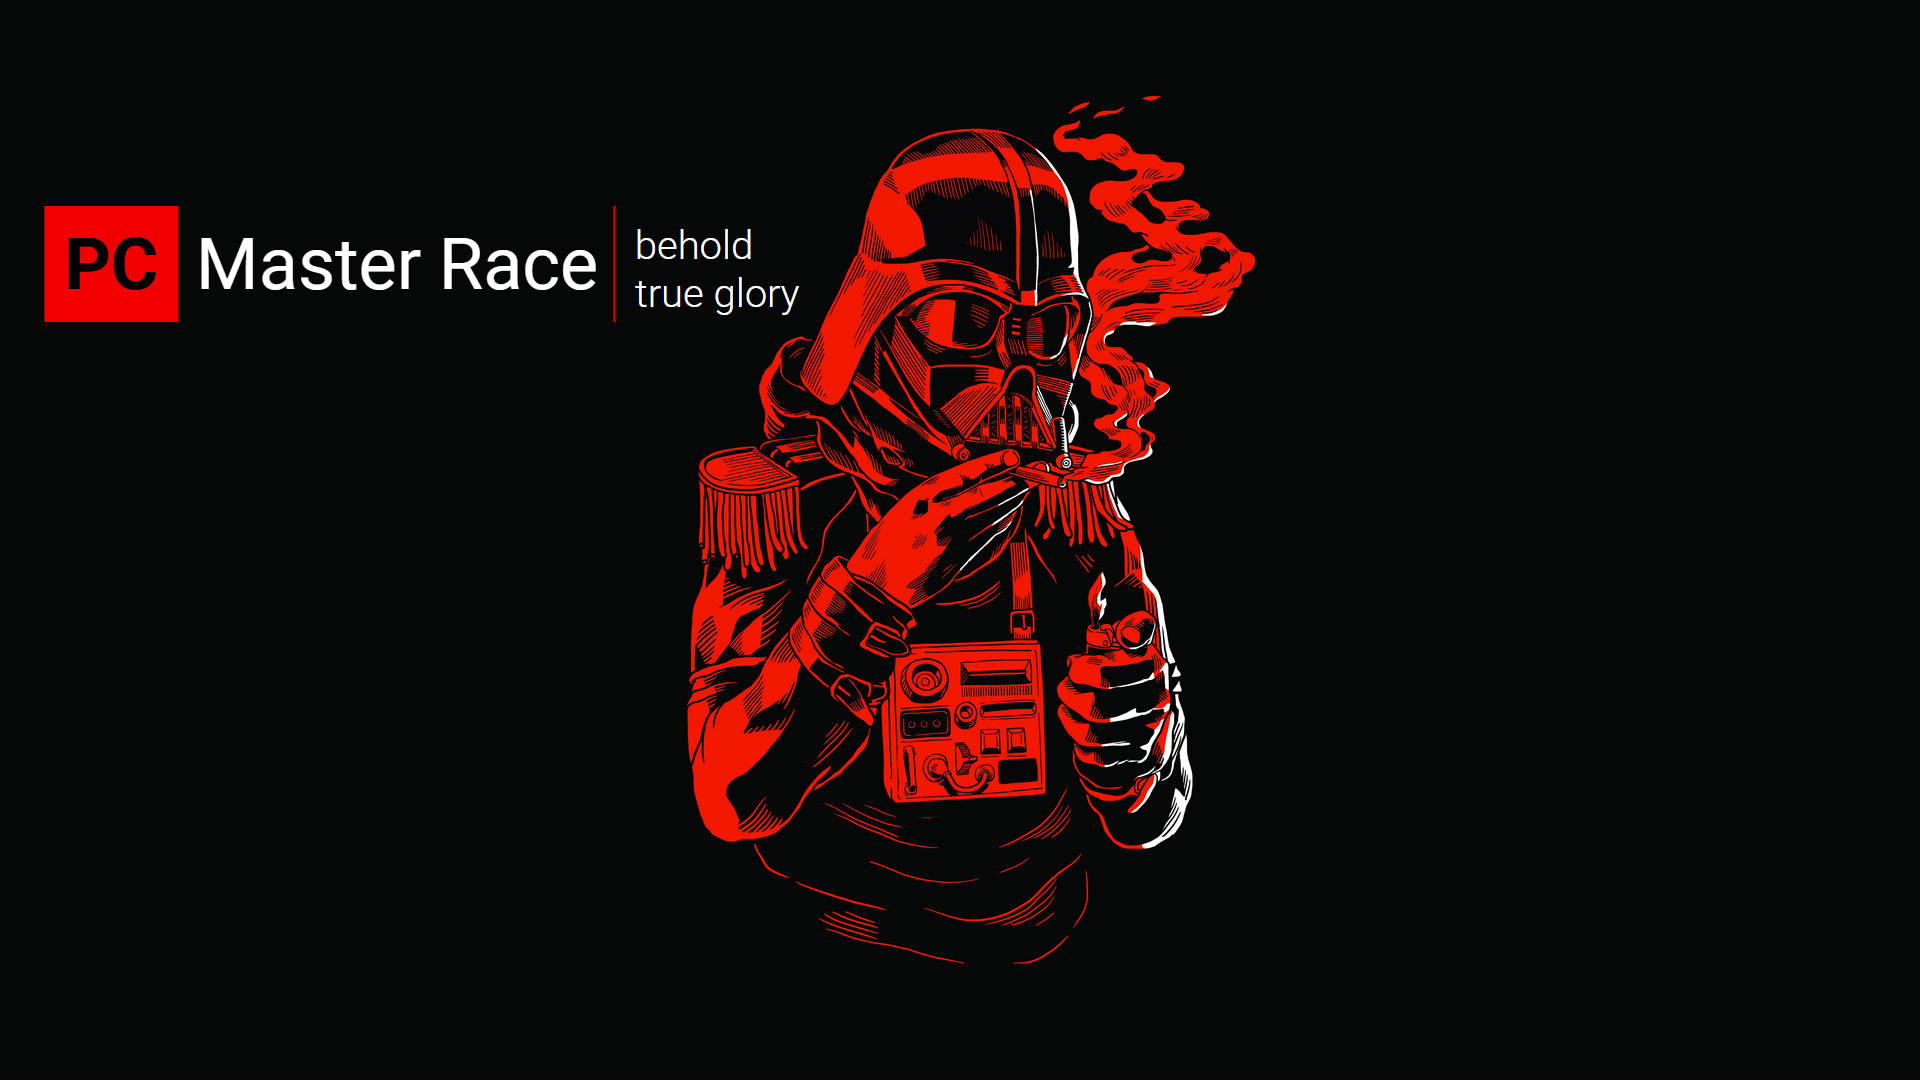 PC Mester Race Stormtrooper Ryger Wallpaper